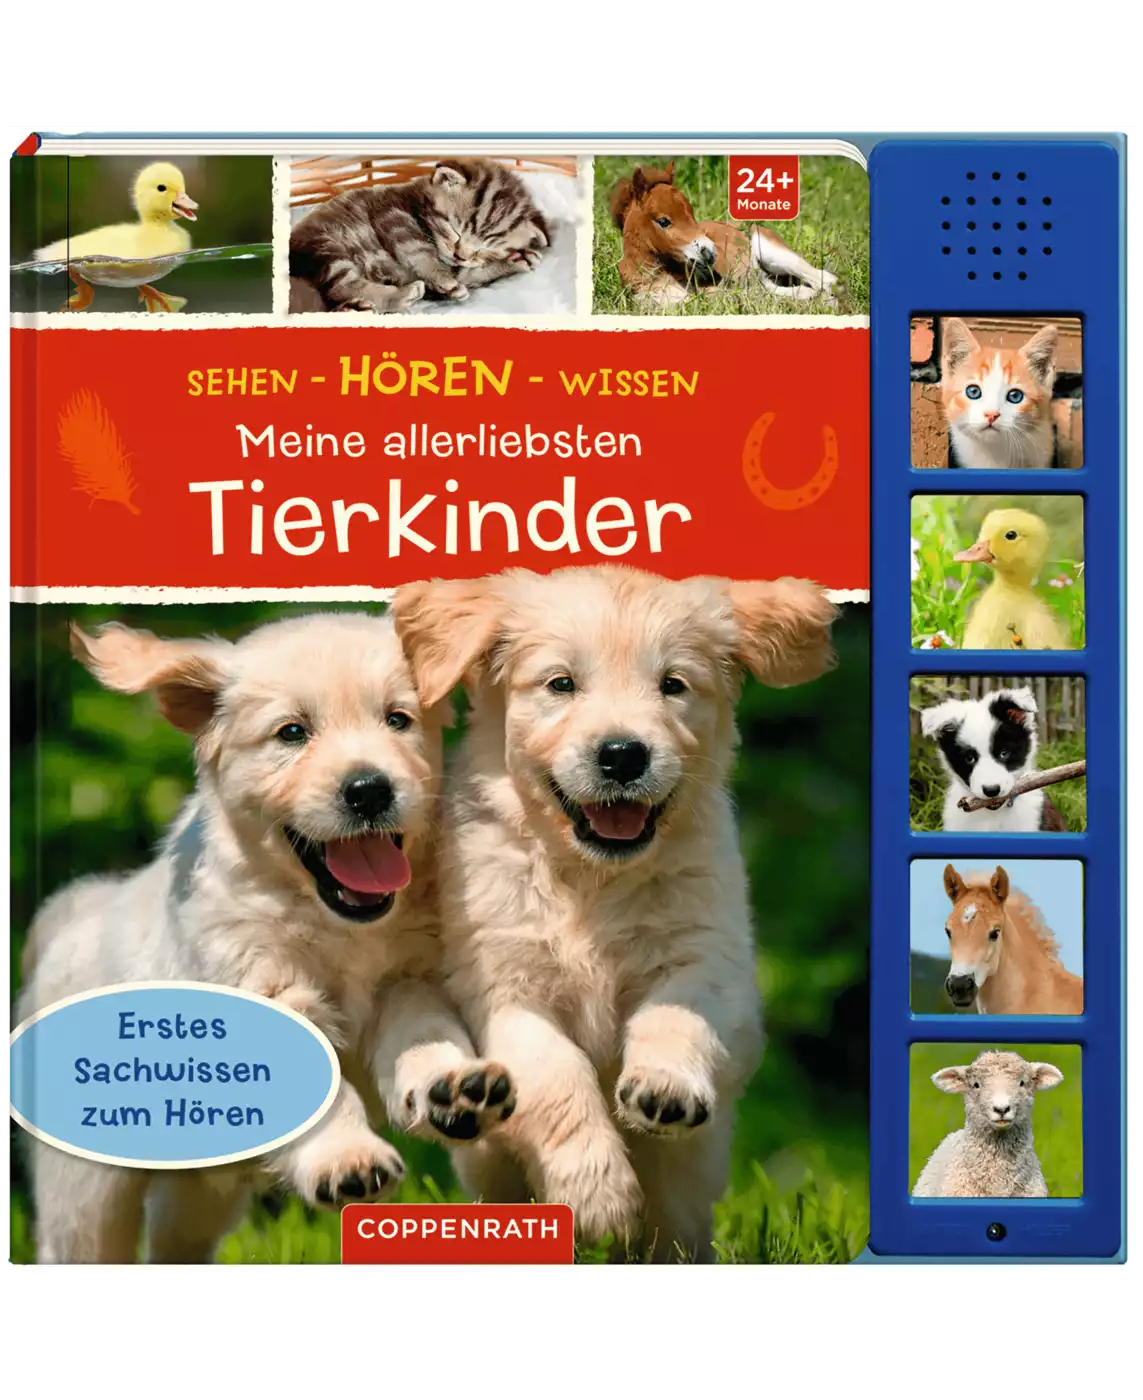 Sehen-Hören-Wissen: Meine allerliebsten Tierkinder COPPENRATH 2000568530801 2